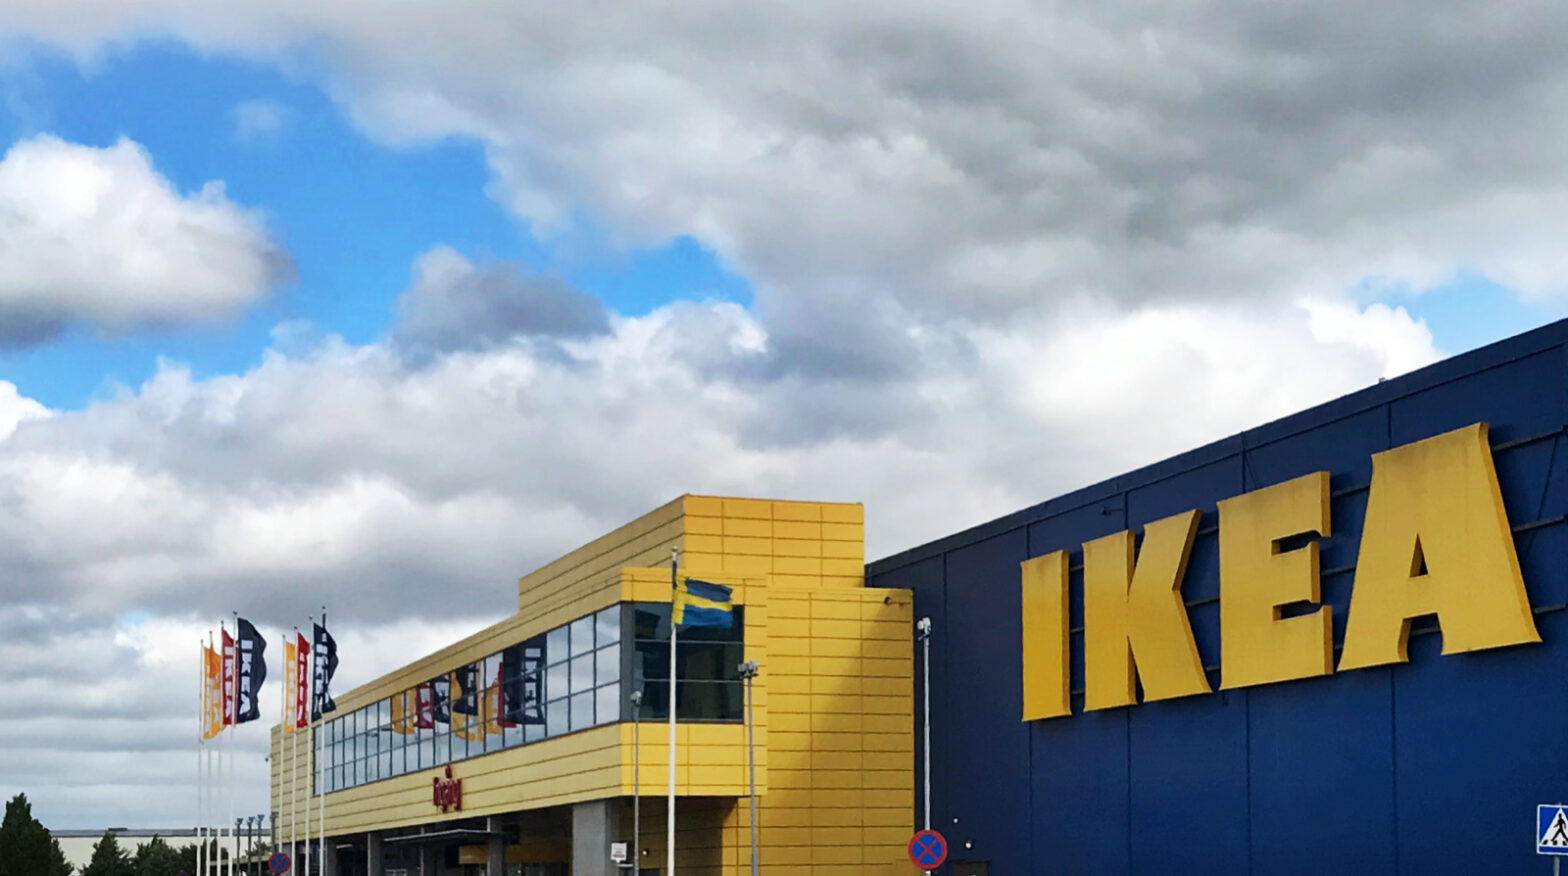 Varför besöka IKEA när vi bor i en husbil på 16 kvm?